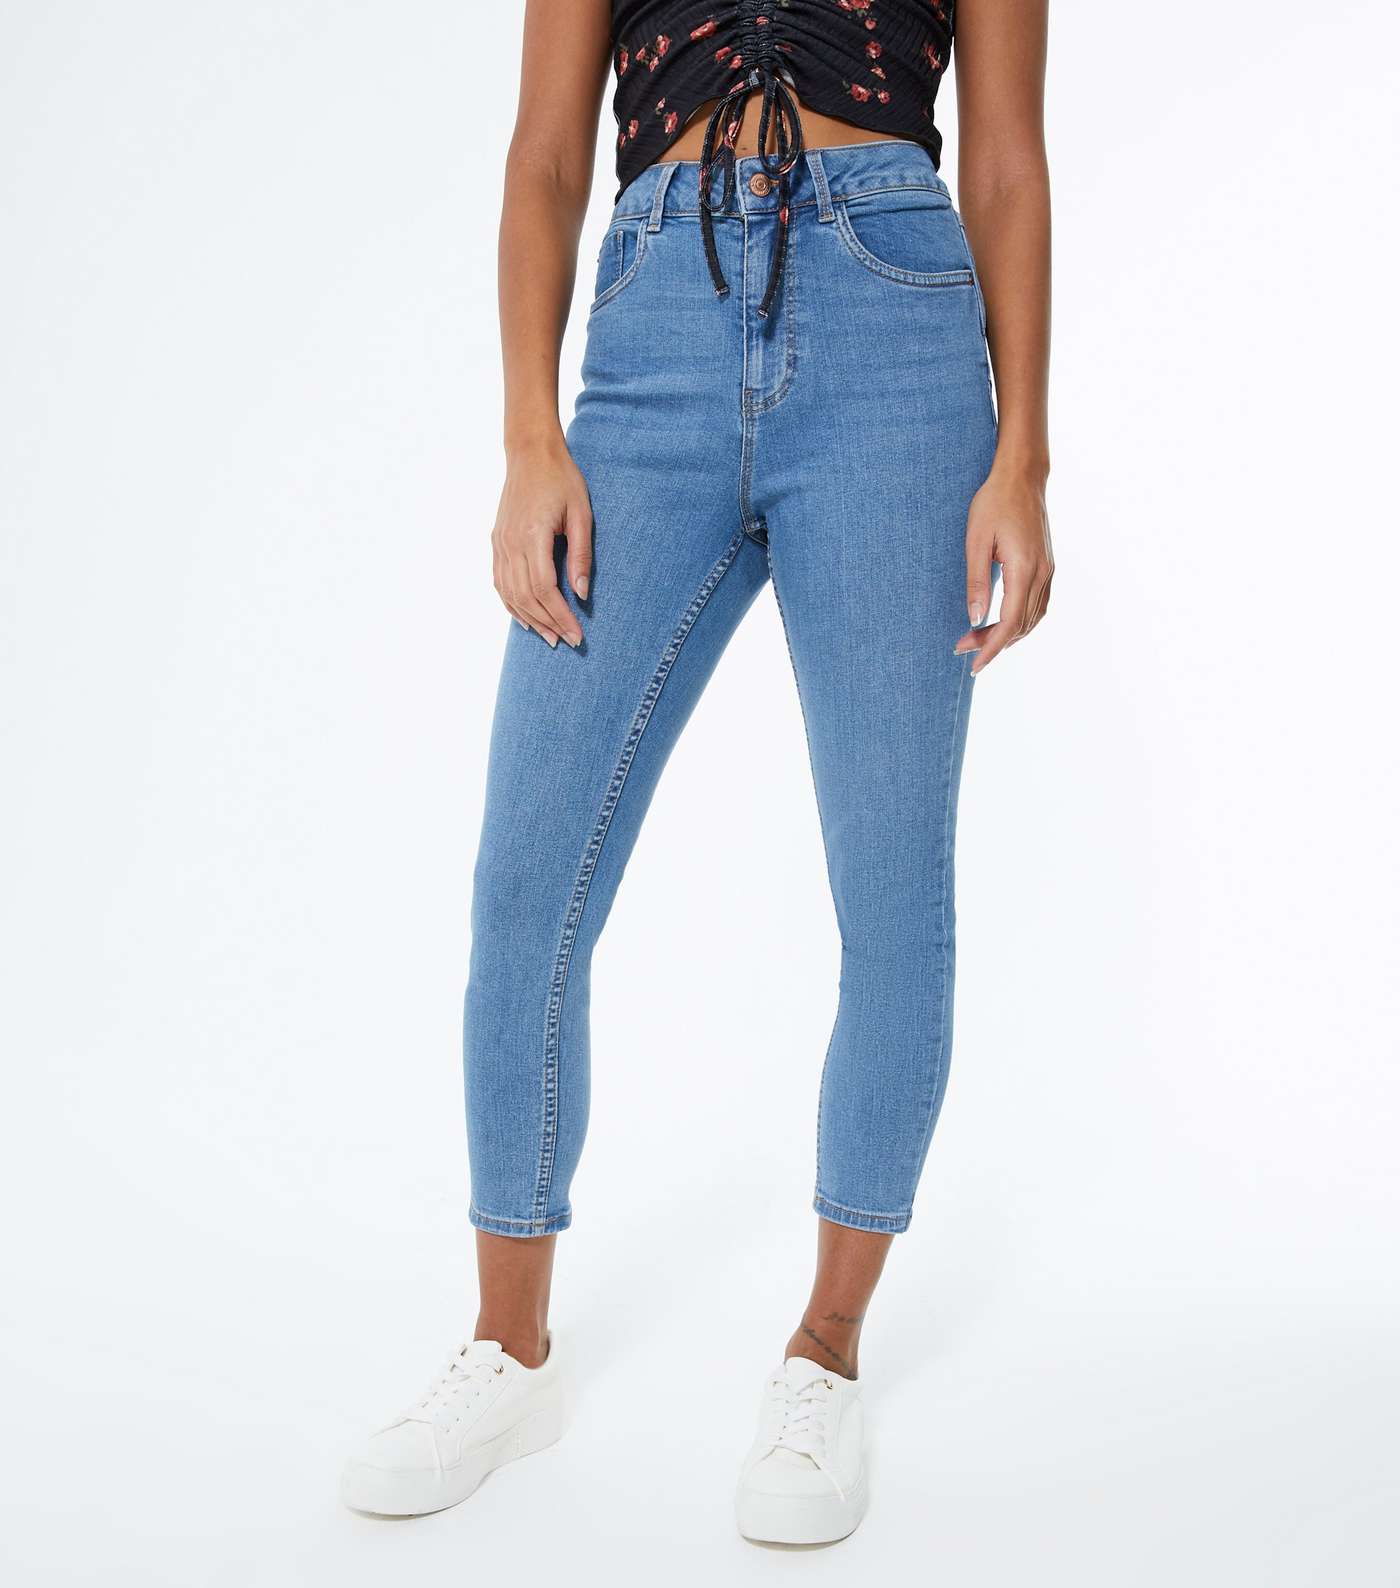 Petite Blue Lift & Shape Jenna Skinny Jeans Image 2